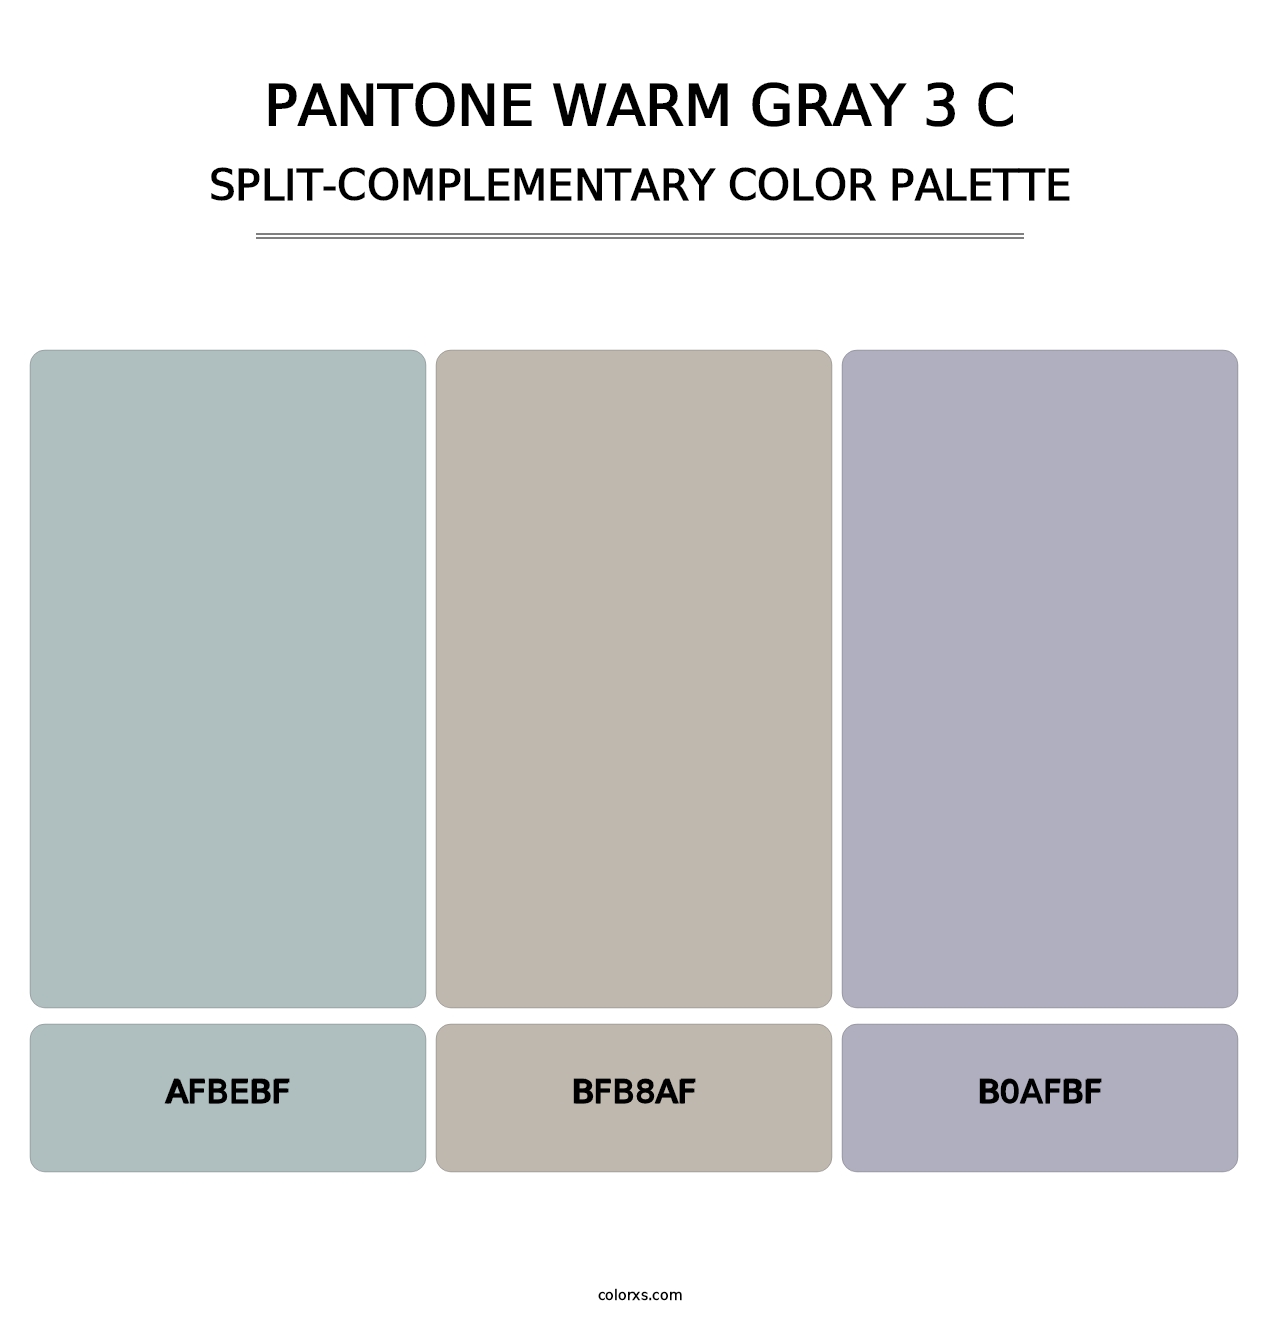 PANTONE Warm Gray 3 C - Split-Complementary Color Palette